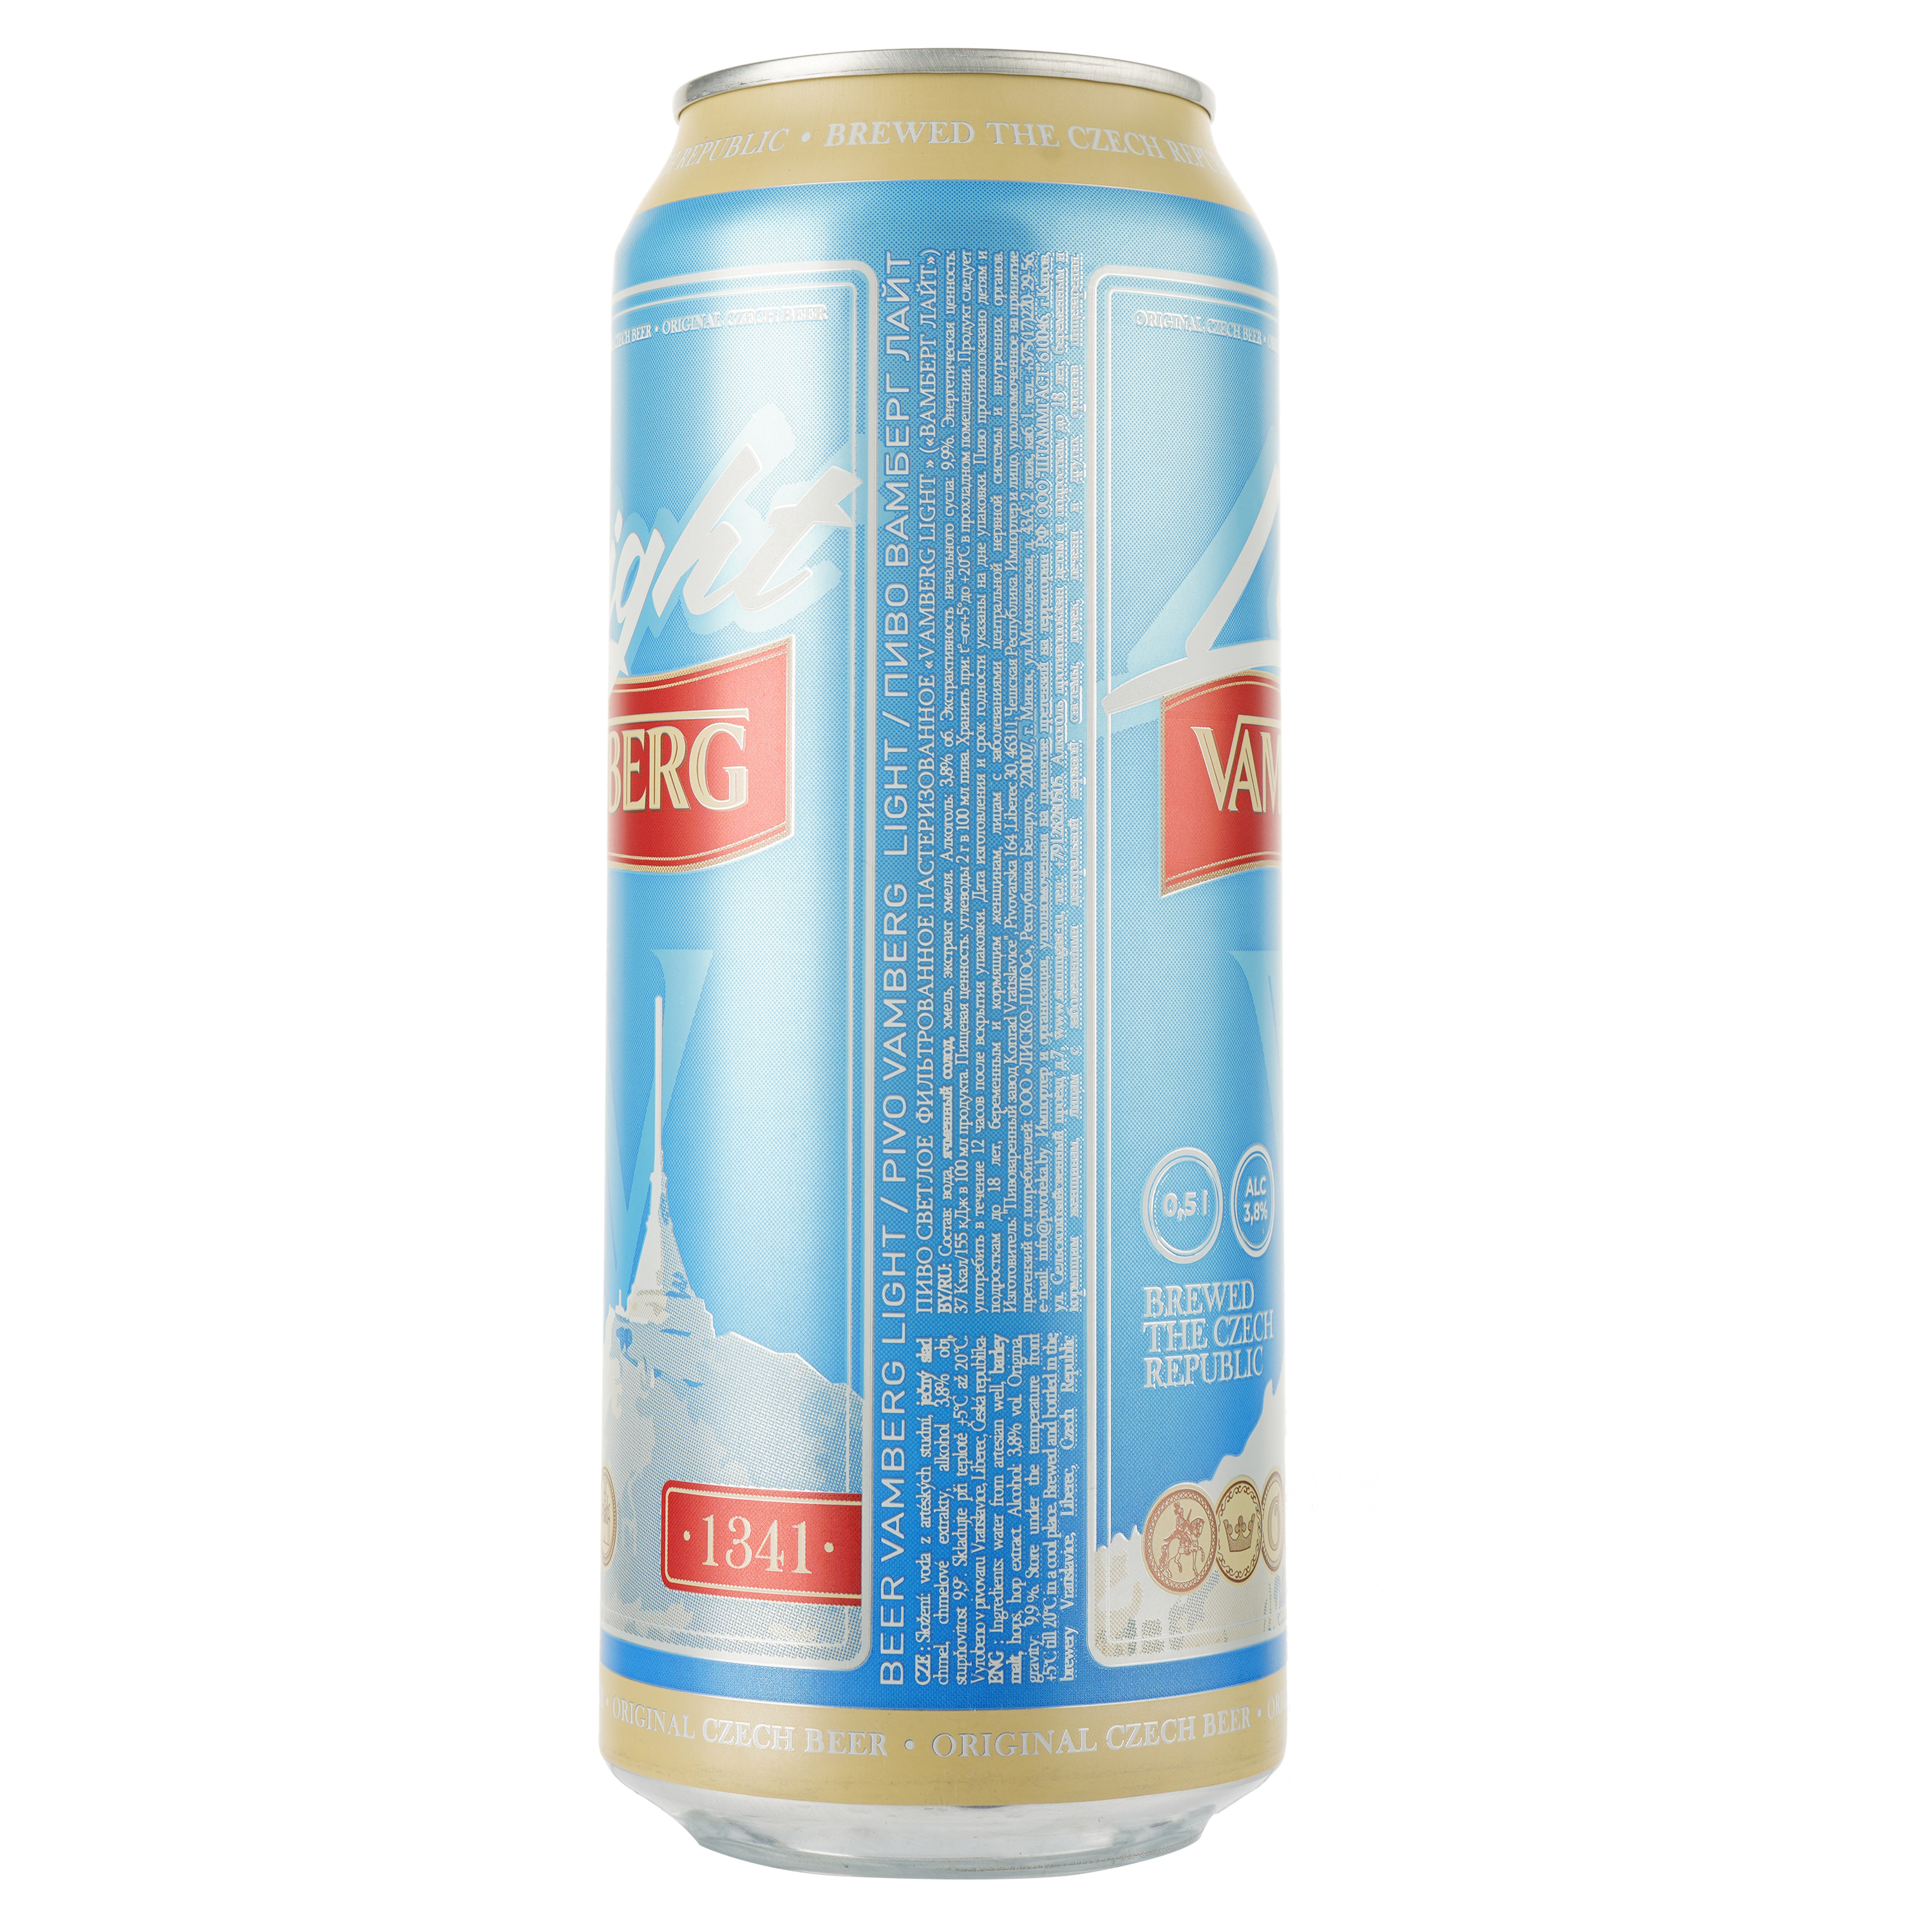 Пиво Vamberg Light світле, 3.8%, з/б, 0.5 л - фото 2